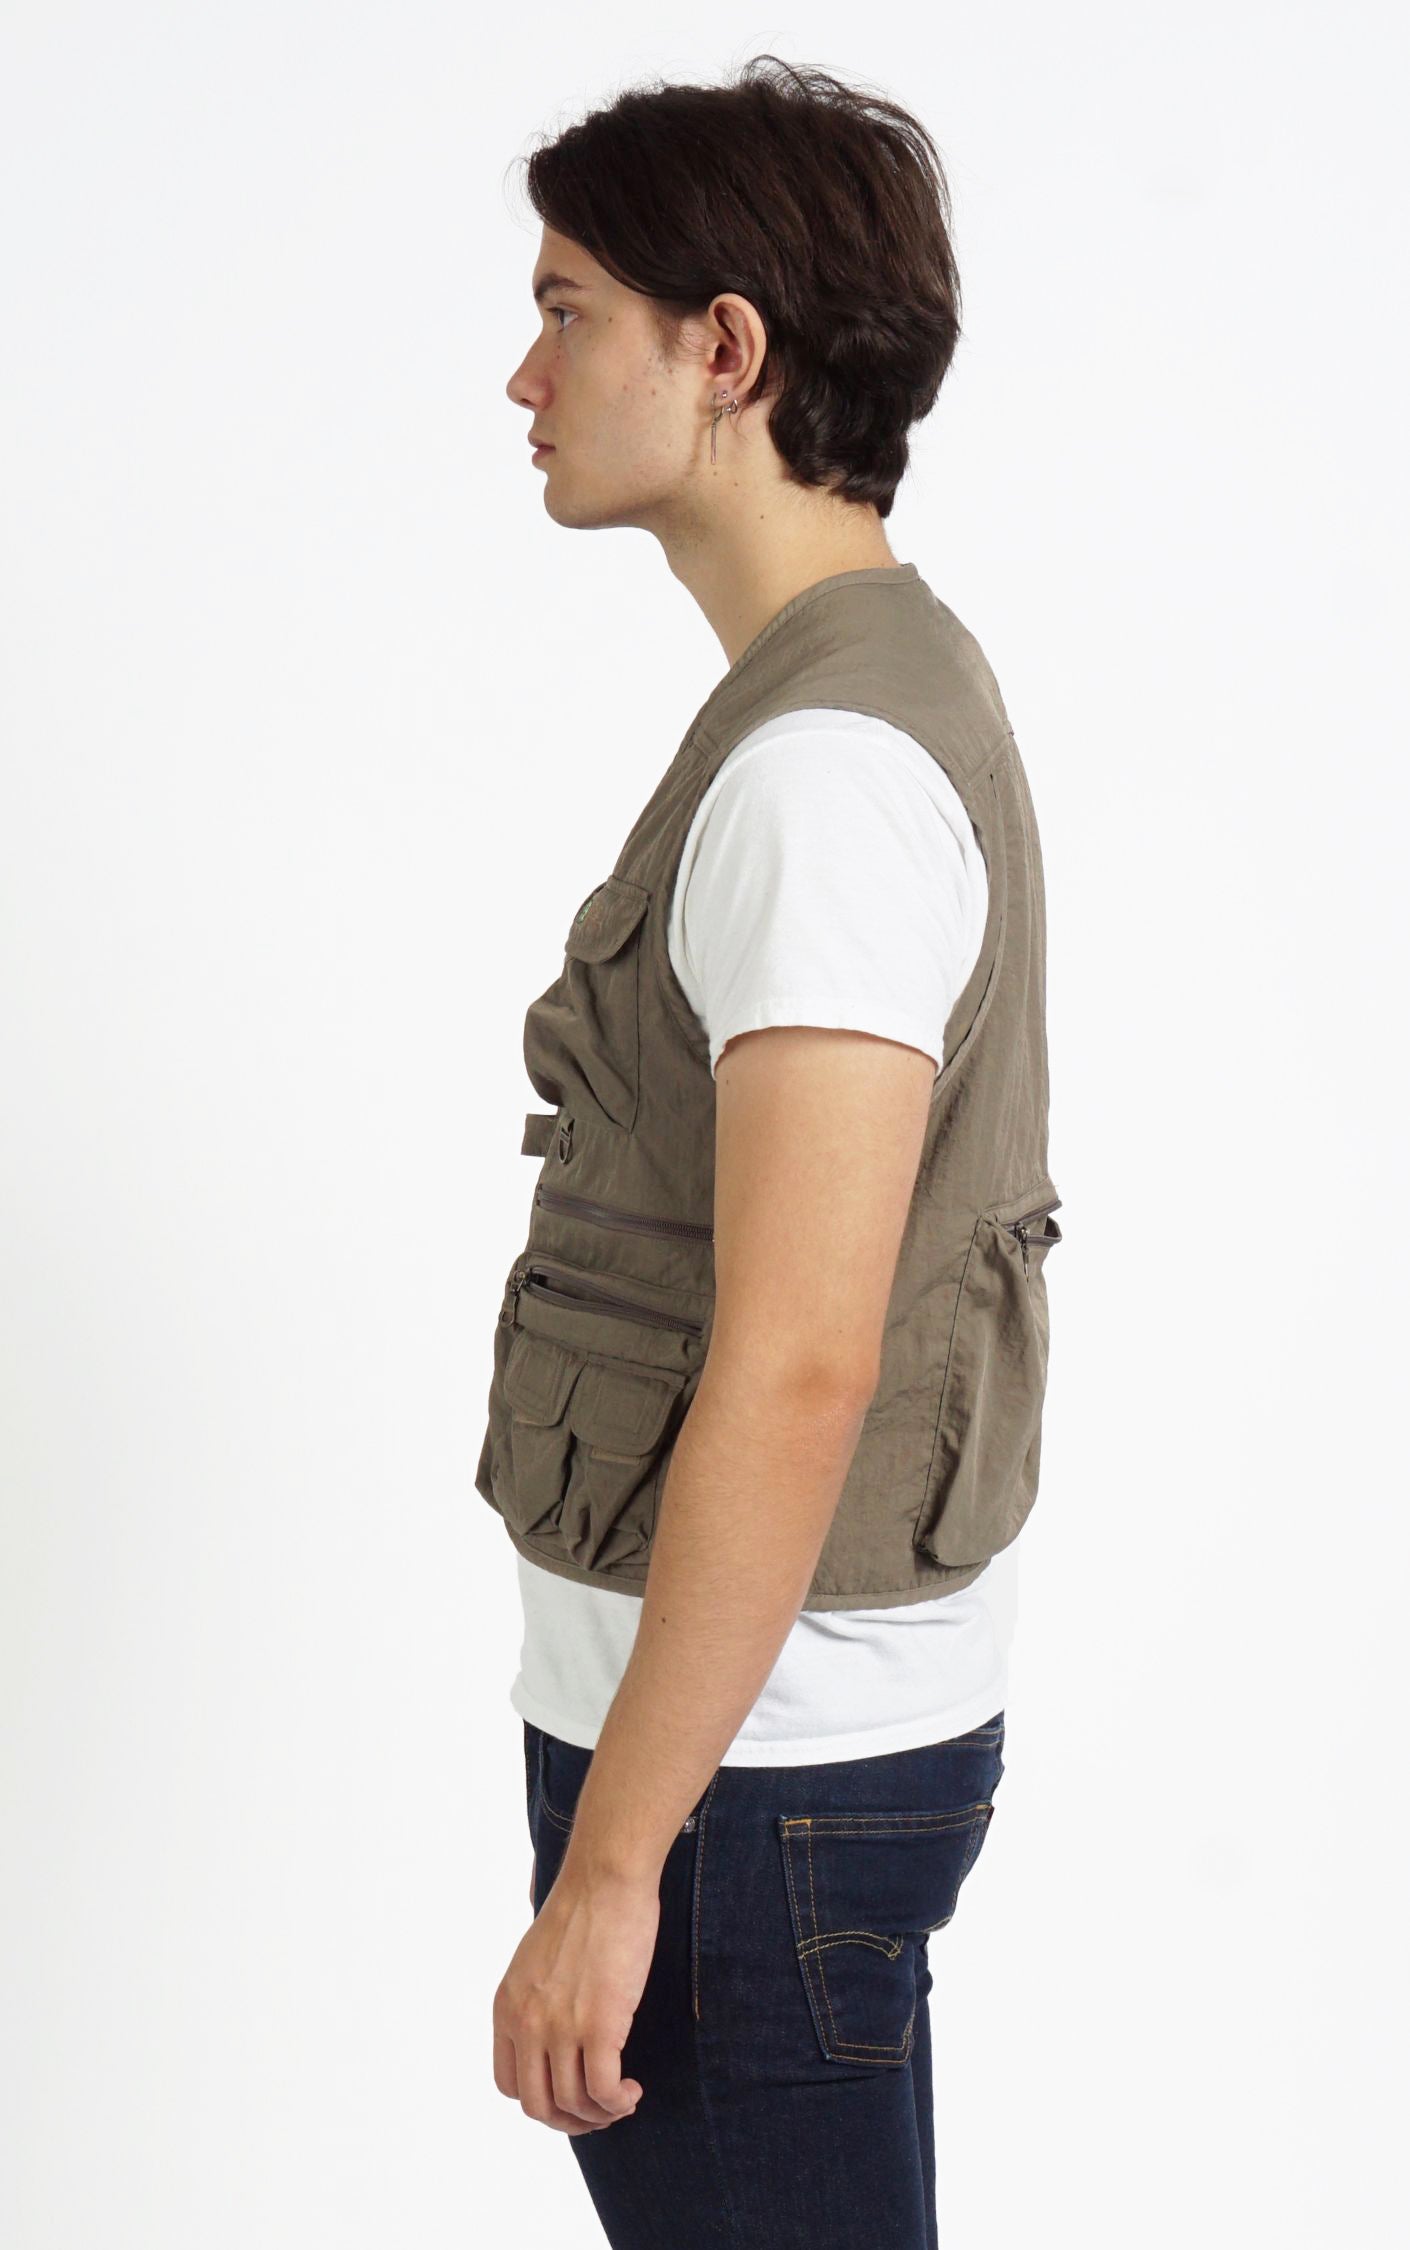 KOLON SPORT Khaki Cargo Zipped Pockets Outdoors Vest resellum